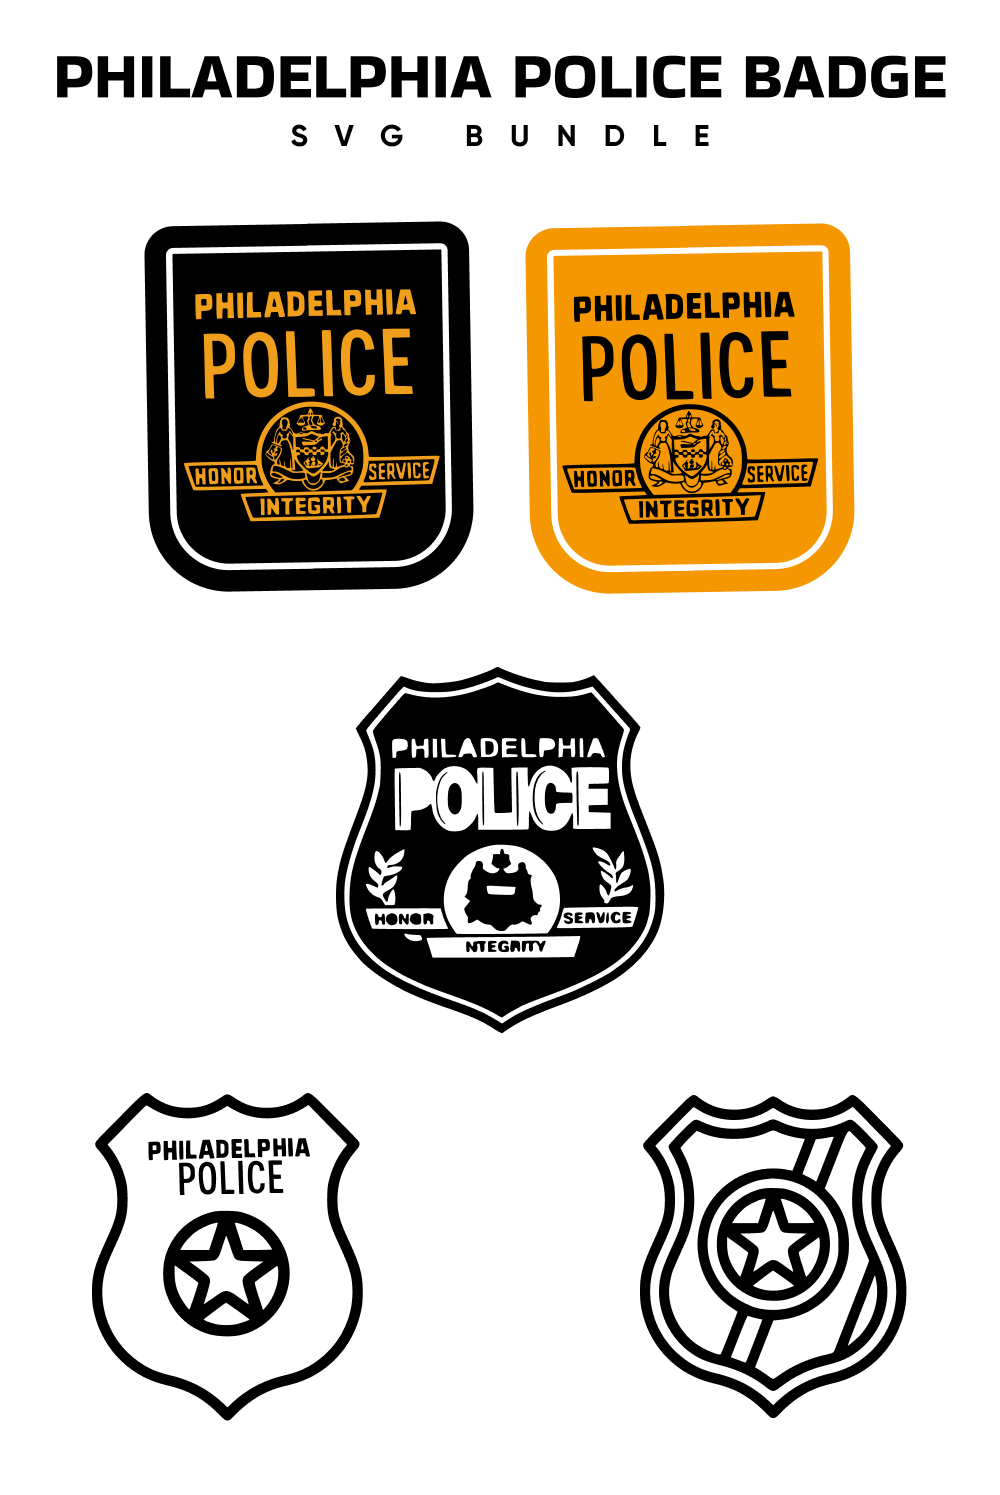 Philadelphia Police Badge Svg - Pinterest.